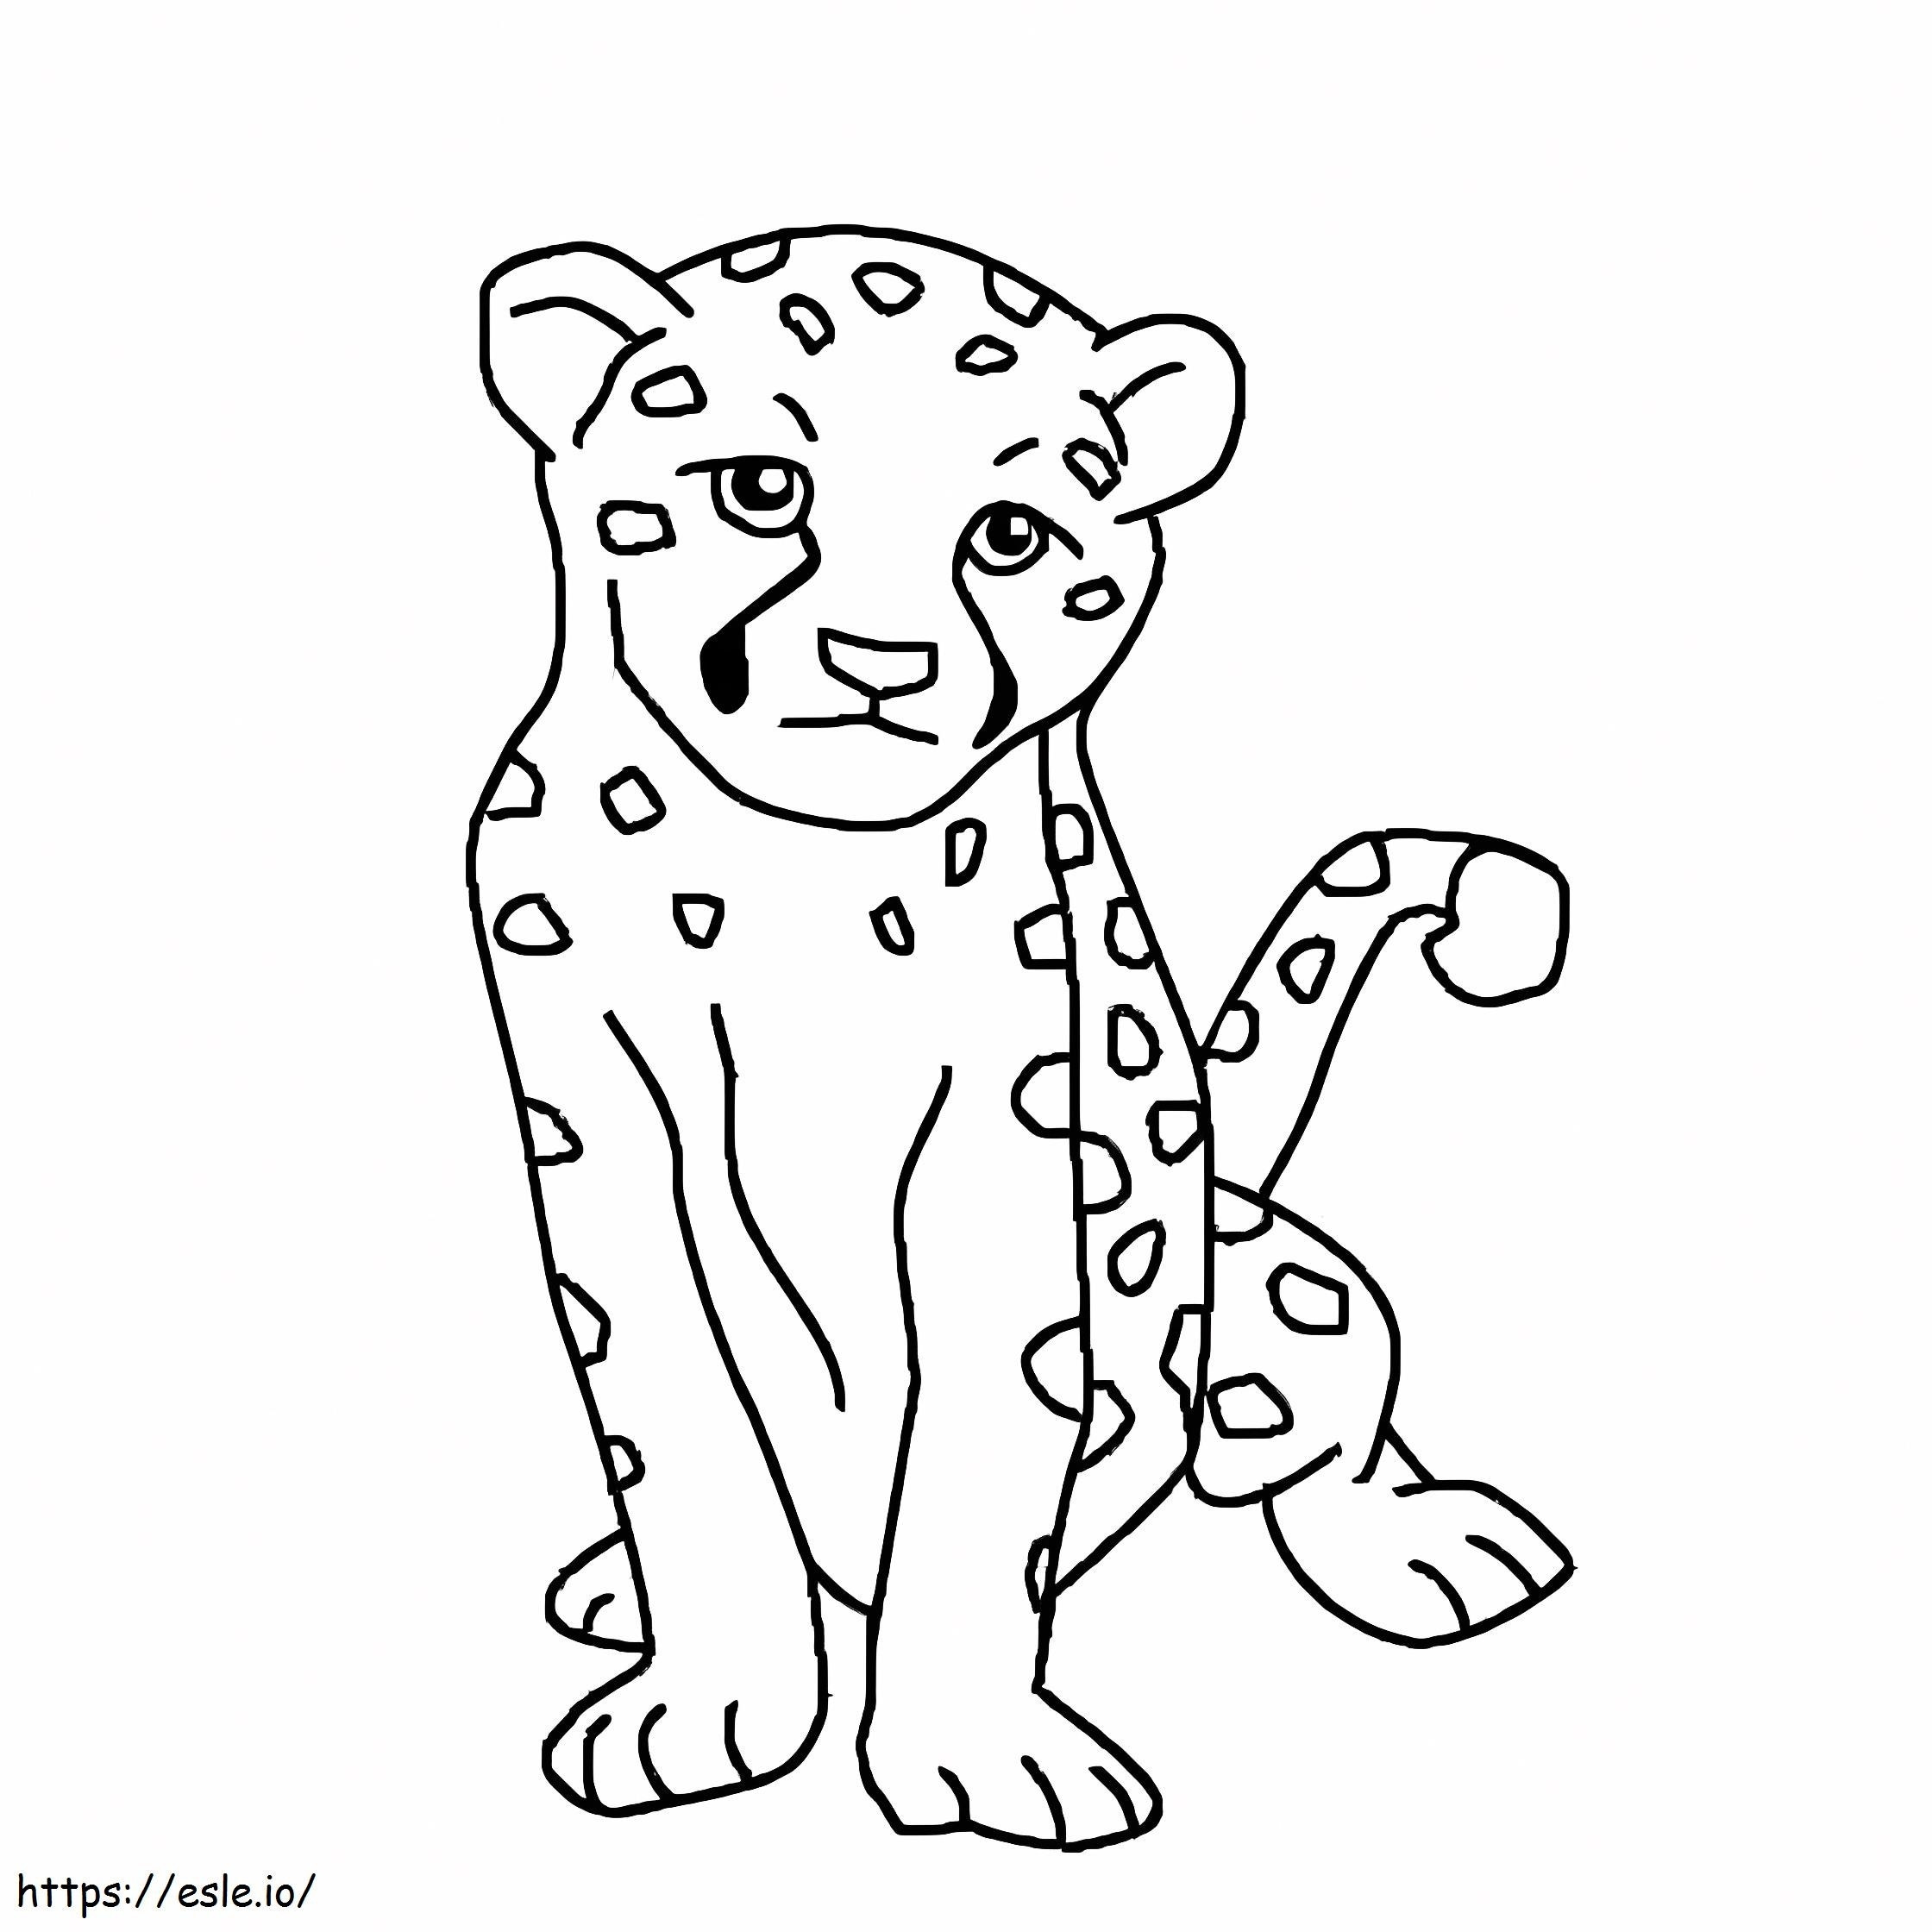 Cheetah Drawing coloring page